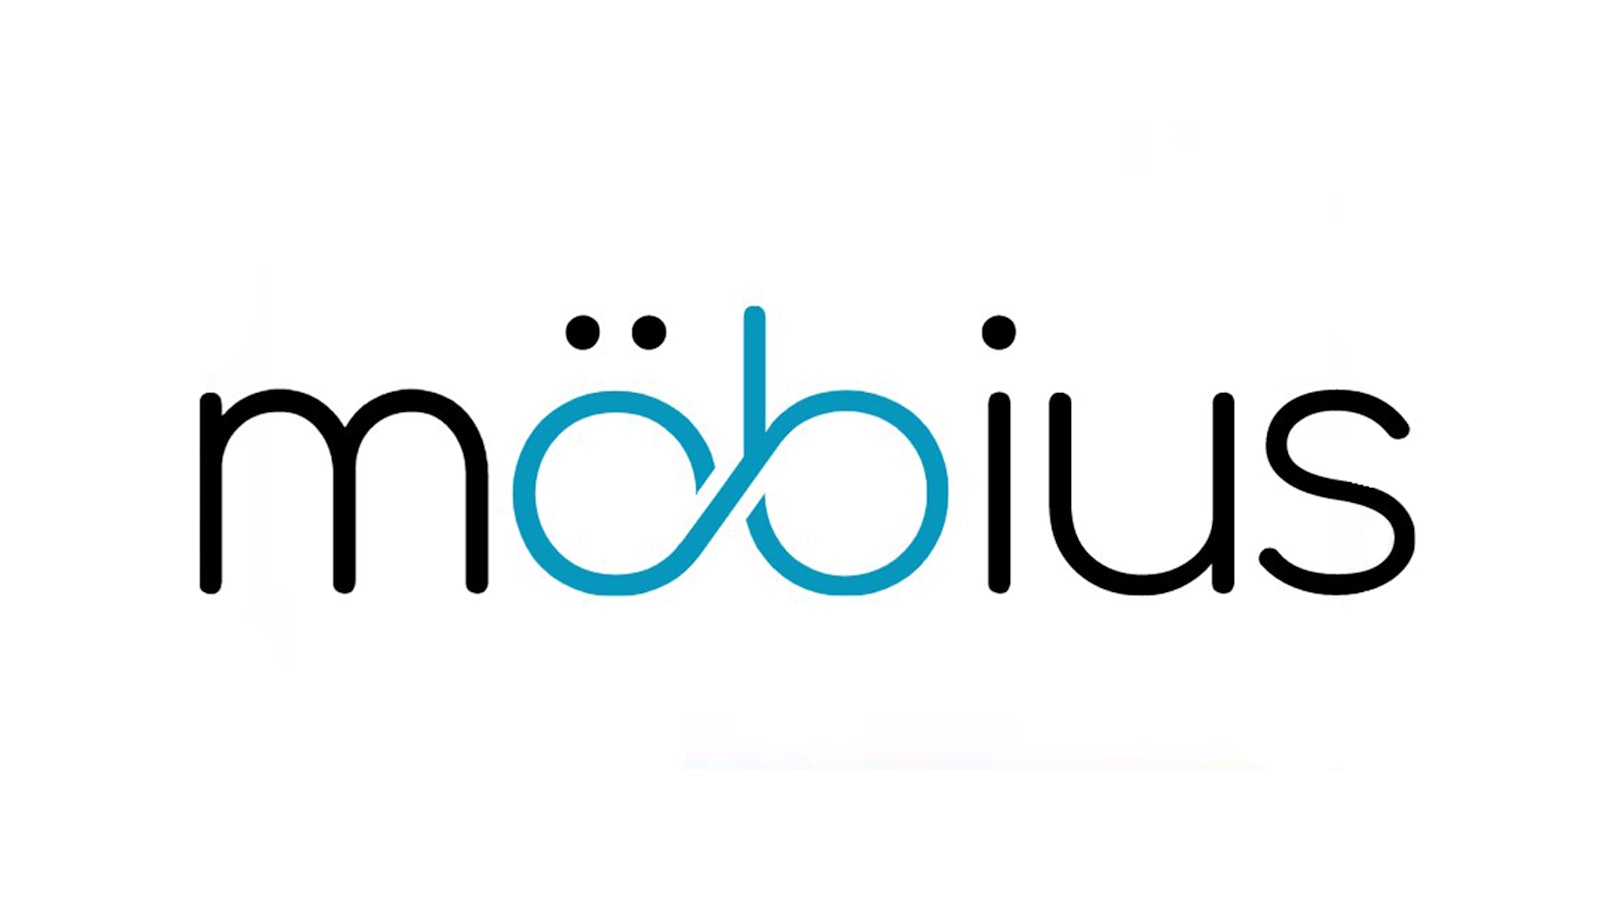 Mobius Digital - News